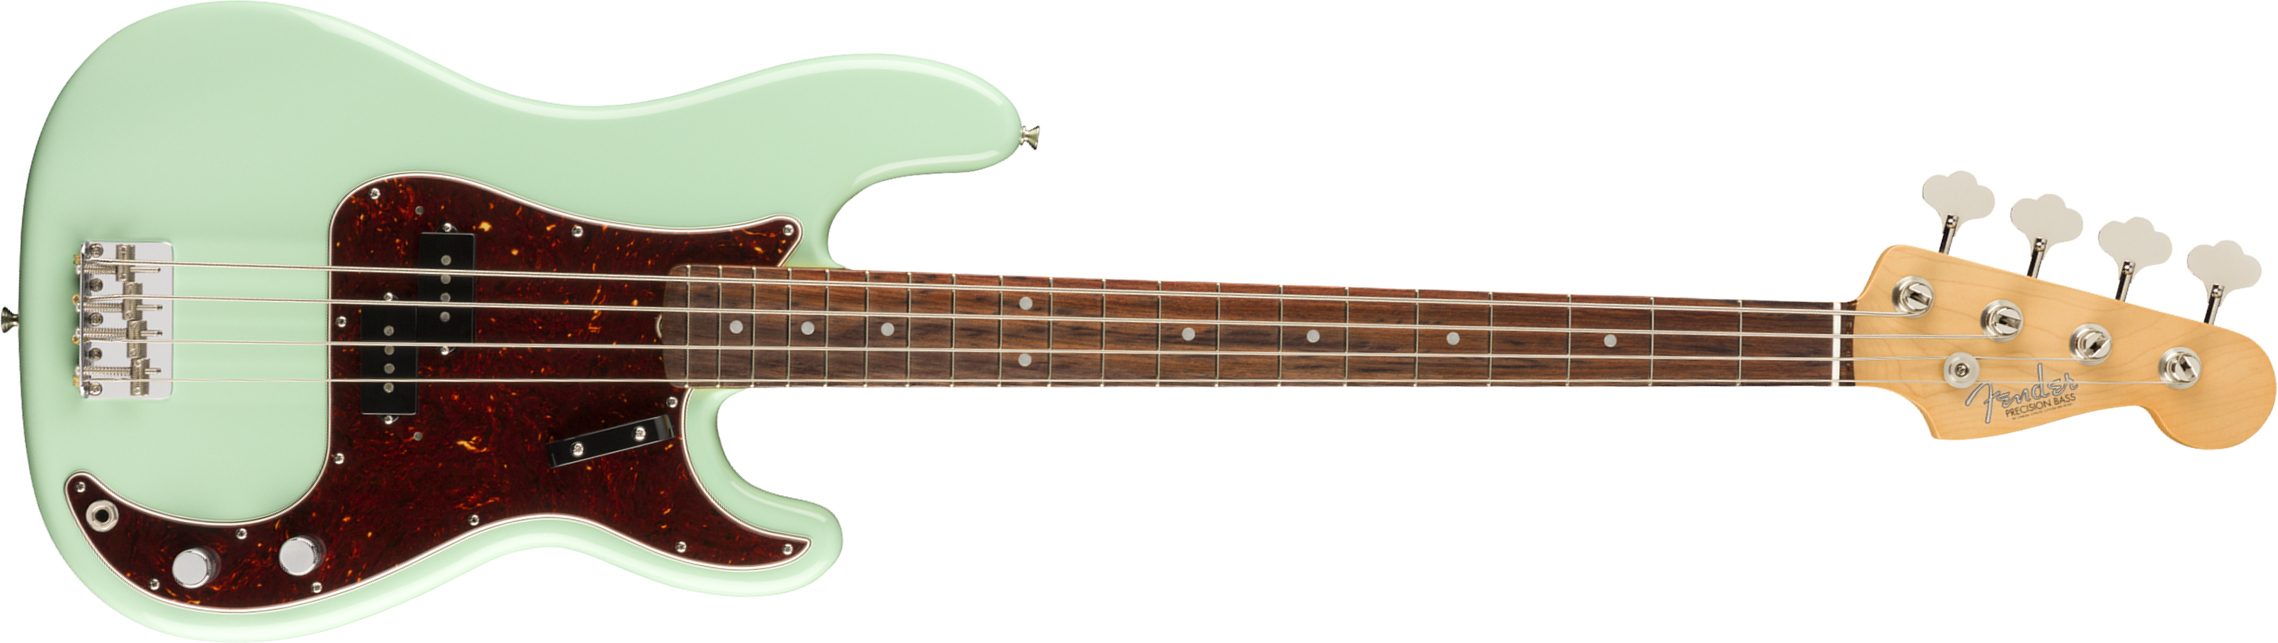 Fender Precision Bass '60s American Original Usa Rw - Surf Green - Bajo eléctrico de cuerpo sólido - Main picture